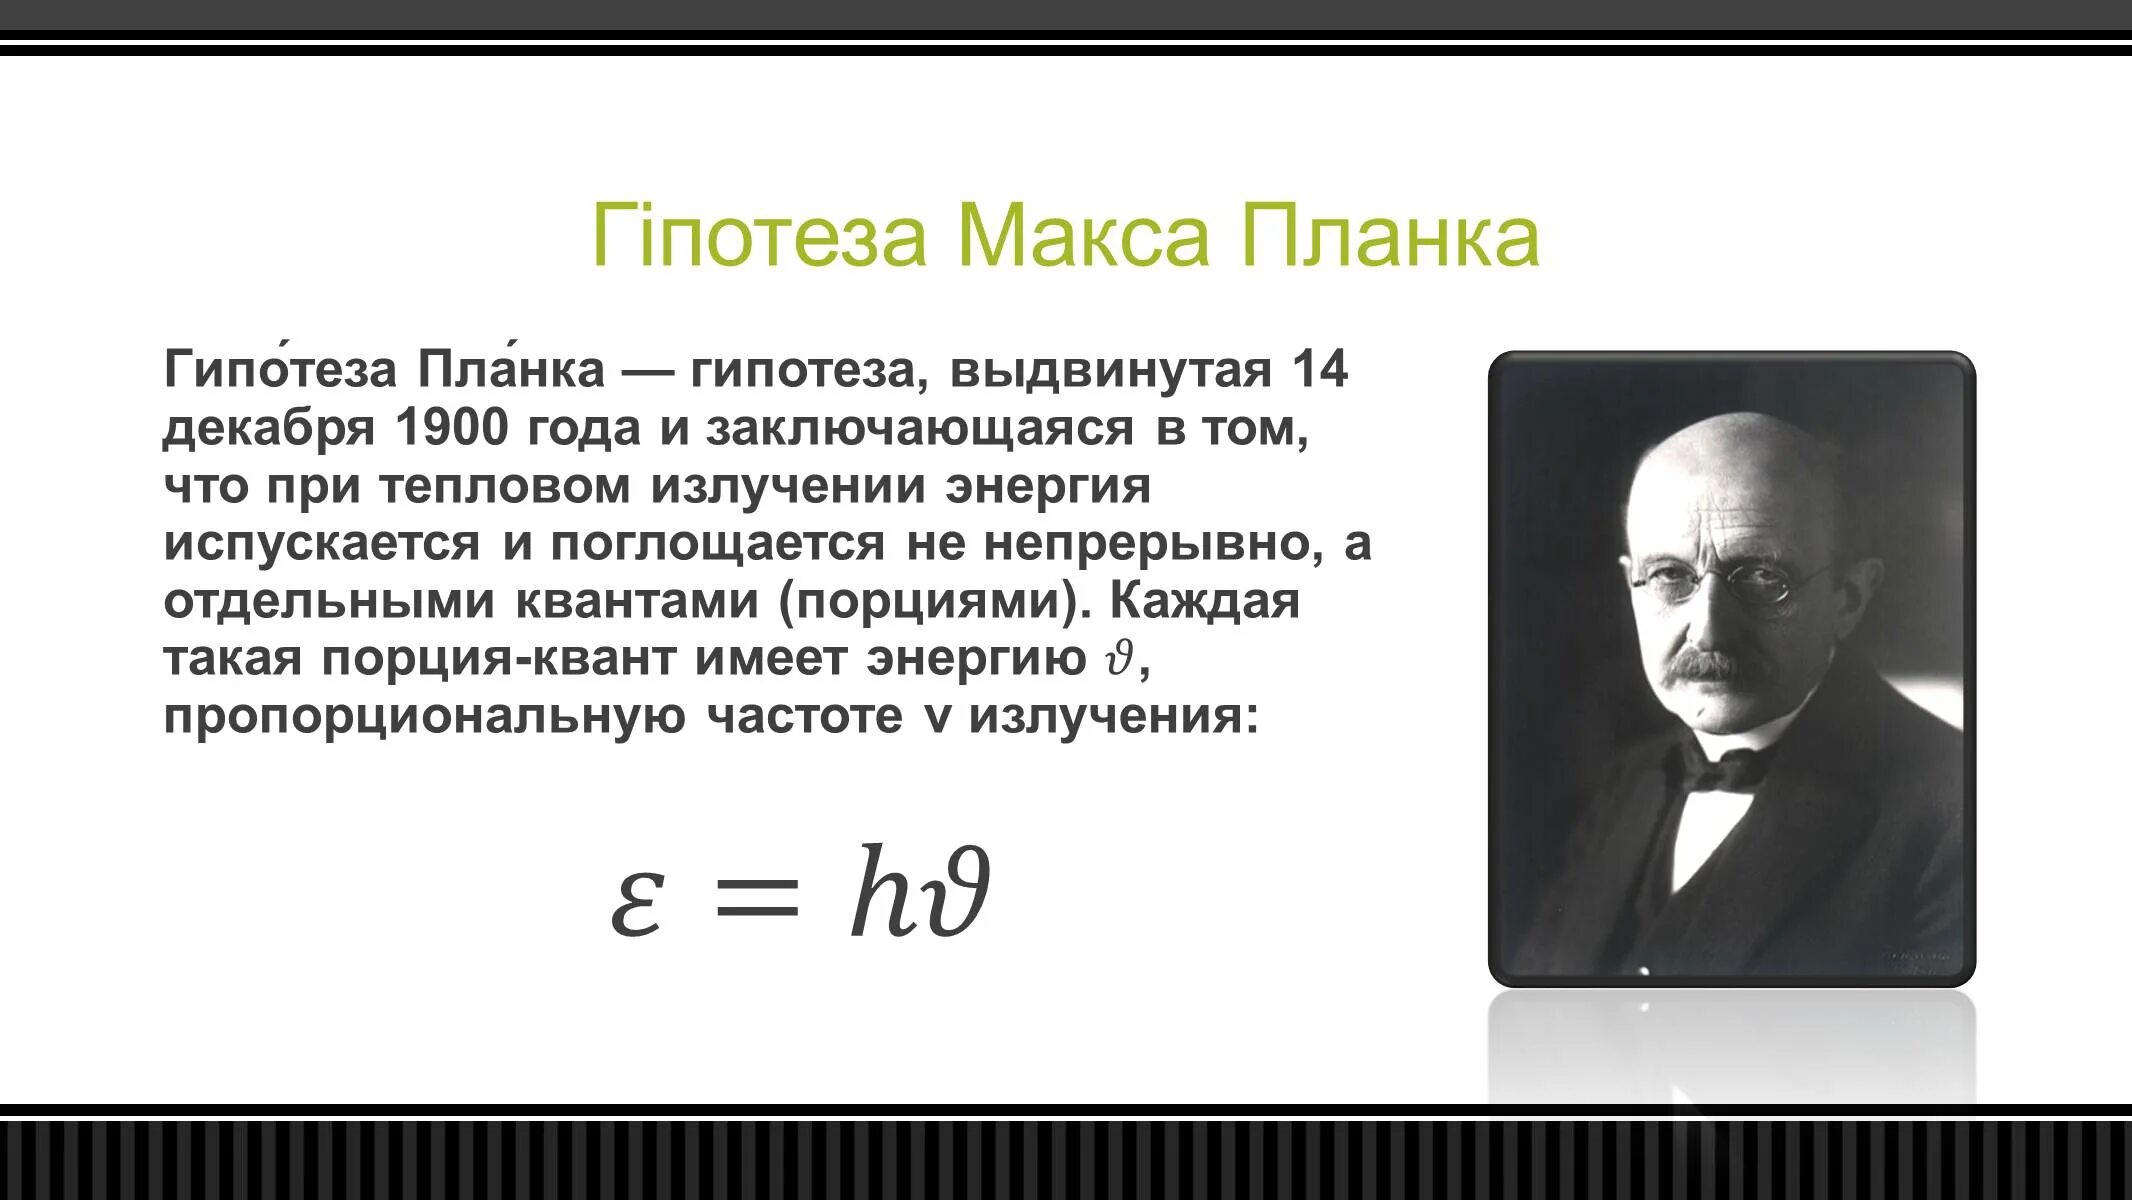 Гипотеза макса планка. Макс Планк квантовая гипотеза. Макс Планк основатель квантовой теории. Макс Планк открытие Кванта. Макс Планк квантовая гипотеза научная деятельность.